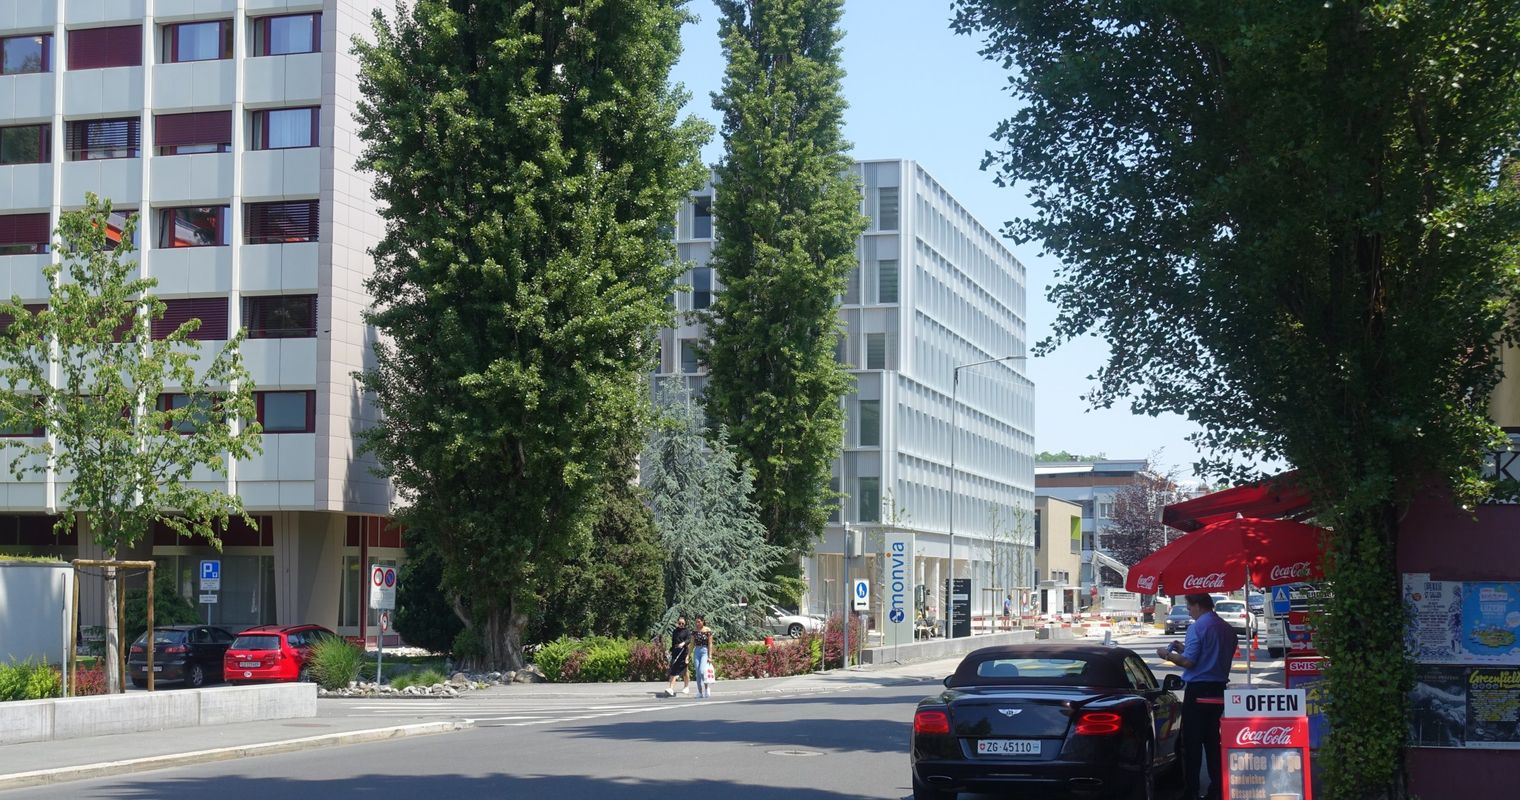 Vorgeschmack der markanten Veränderungen auf Luzerner Spitalareal